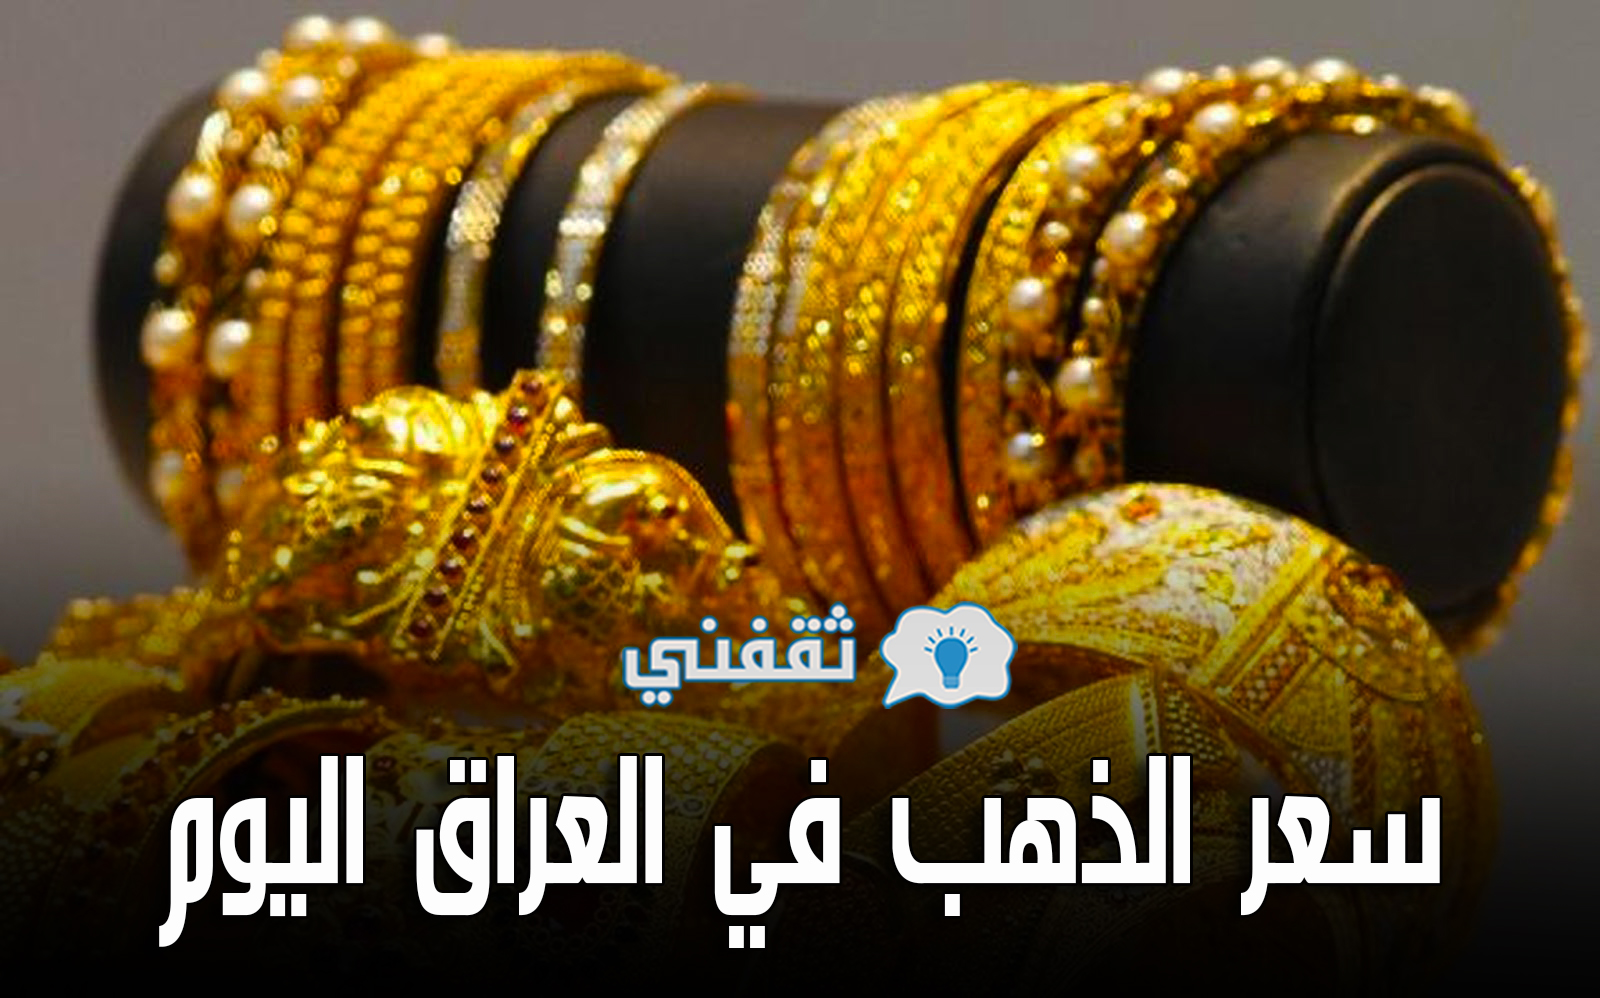 سعر الذهب في العراق اليوم الثلاثاء 4-5-2021 | أسعار مثقال الذهب بالدينار العراقي والدولار في الأسواق المحلية